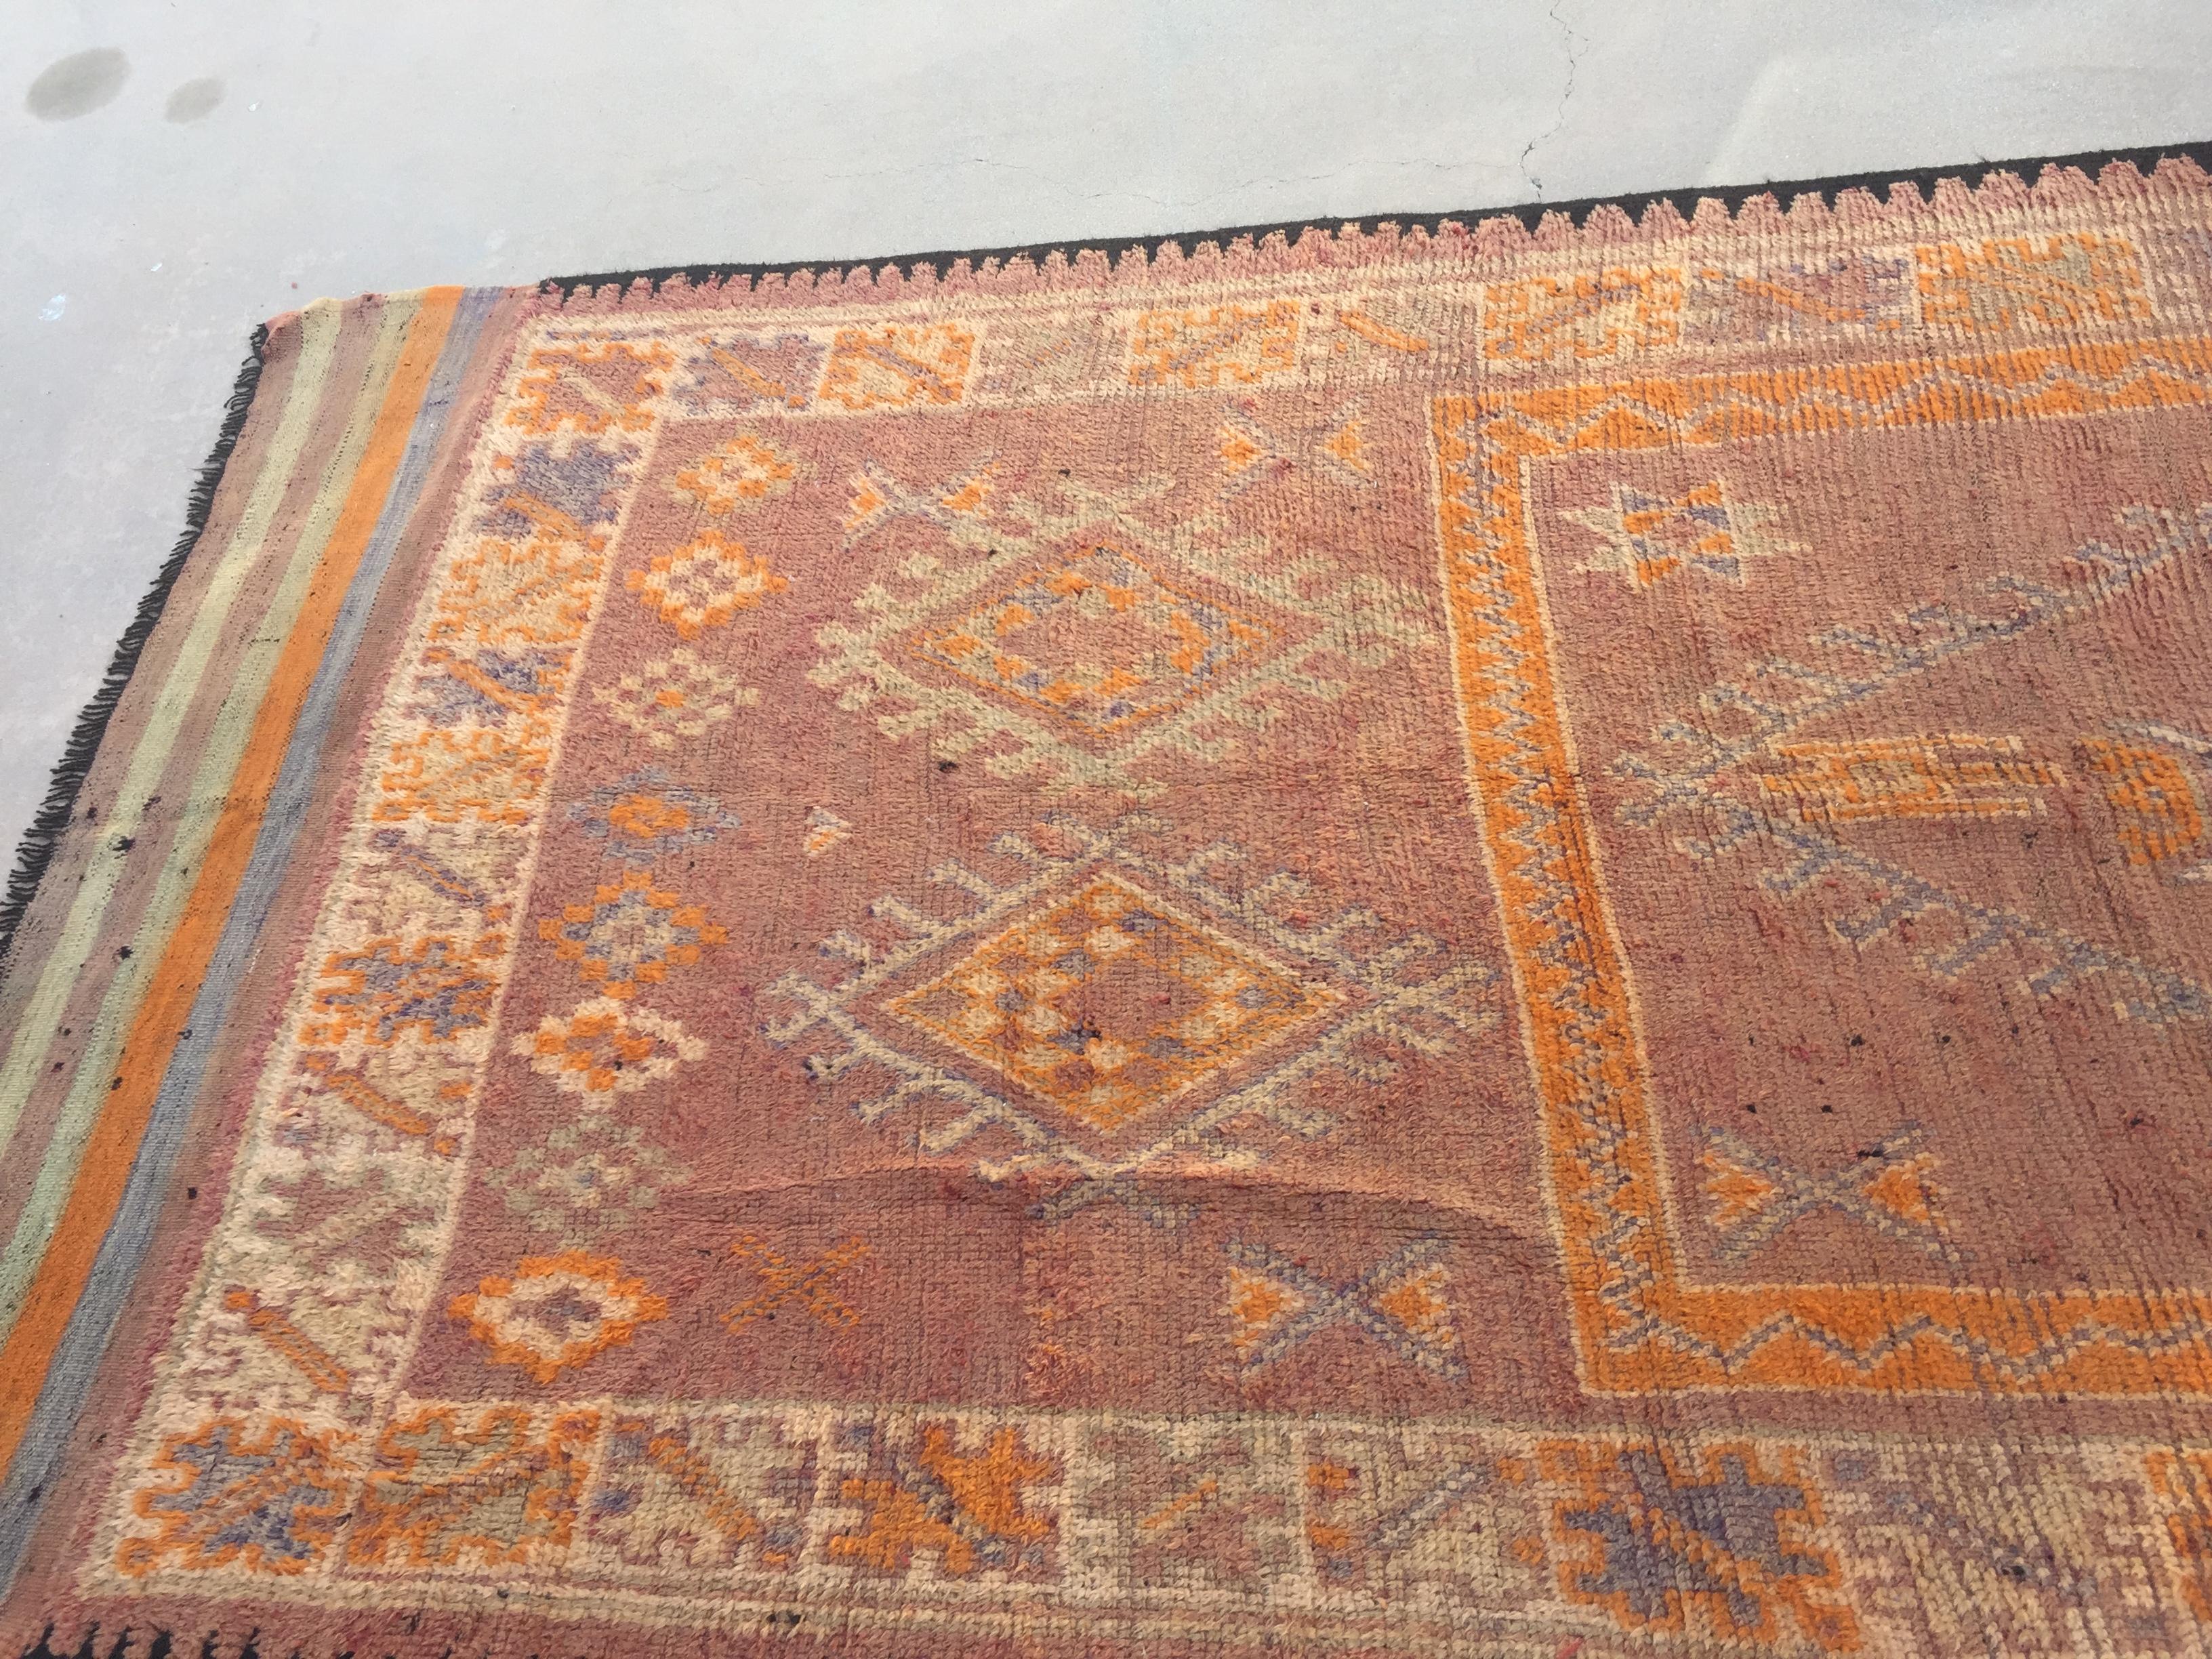 1940 authentischen handgewebten Vintage marokkanischen Berber Stammes-Teppich.Midcentury marokkanischen Bereich Teppich mit Stammes-geometrischen design.Handgewebt von den Berberstämmen in Marokko mit traditionellen geometrischen